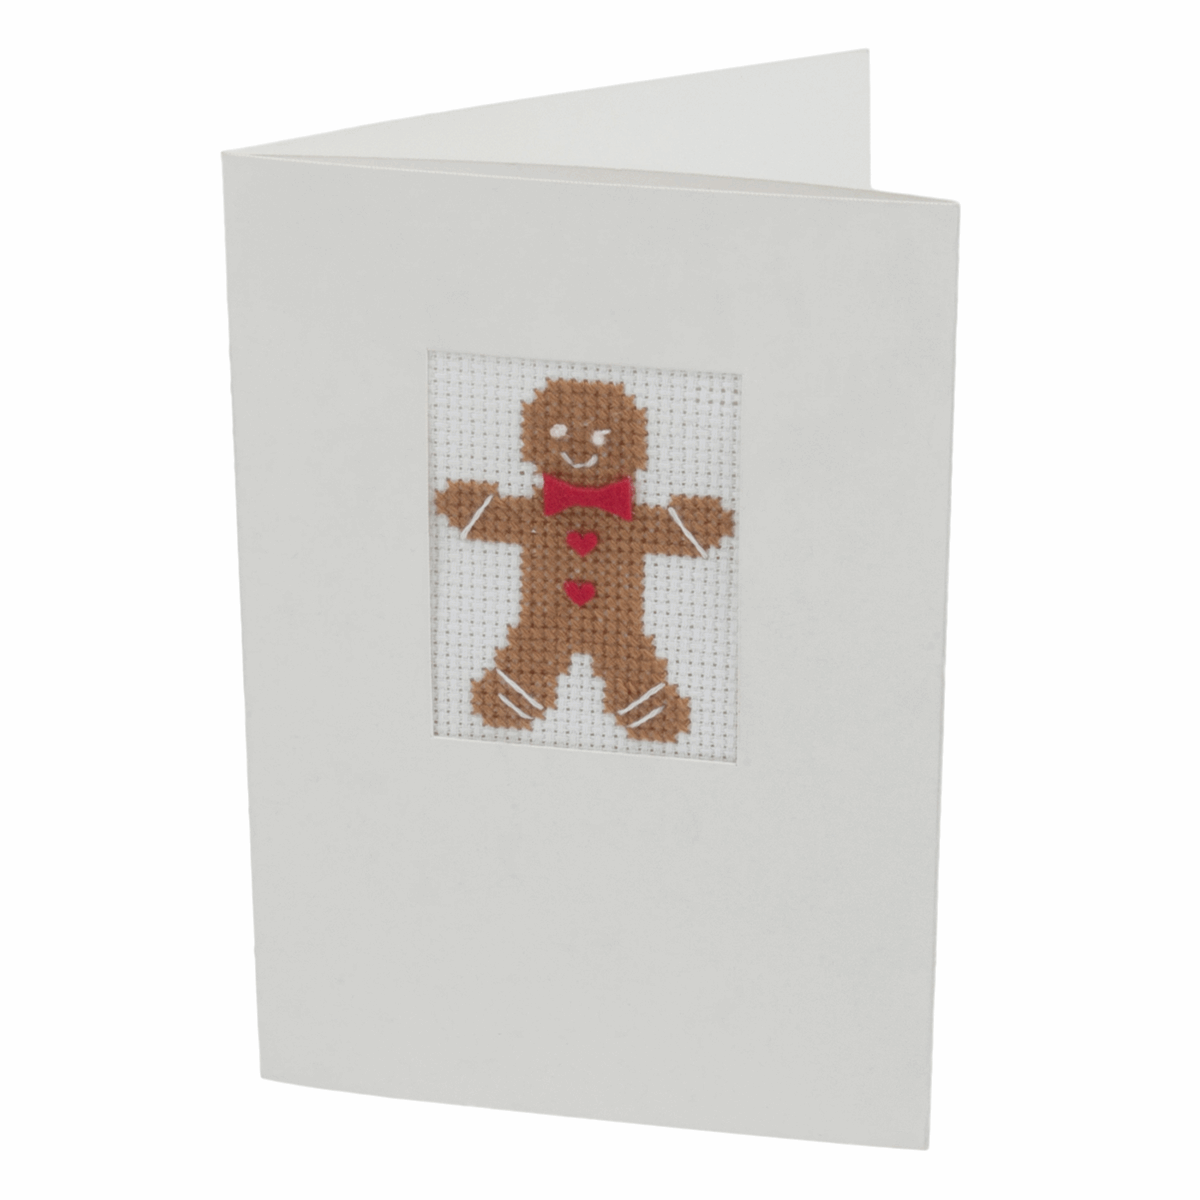 Trimits Cross Stitch Greeting Card Kit - Gingerbread Man